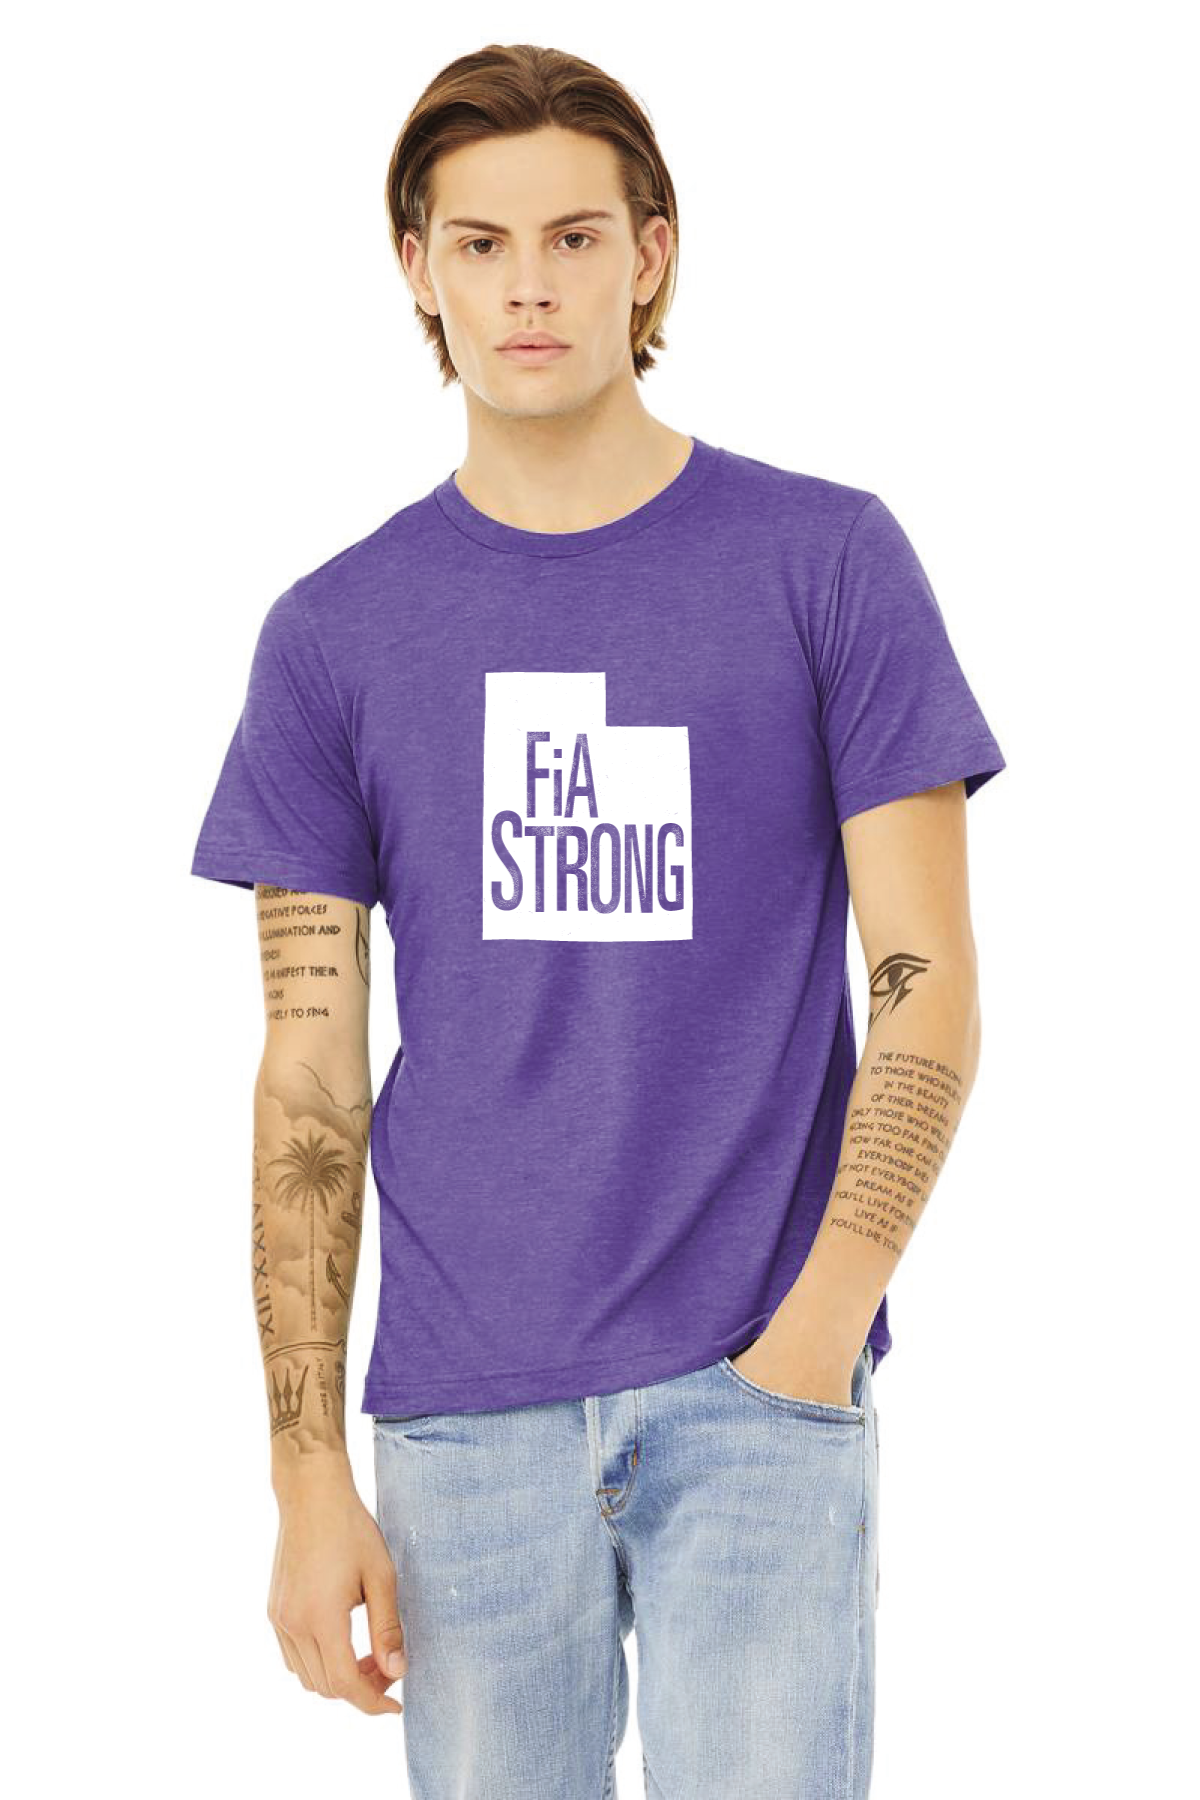 FiA Strong Utah Pre-Order October 2021